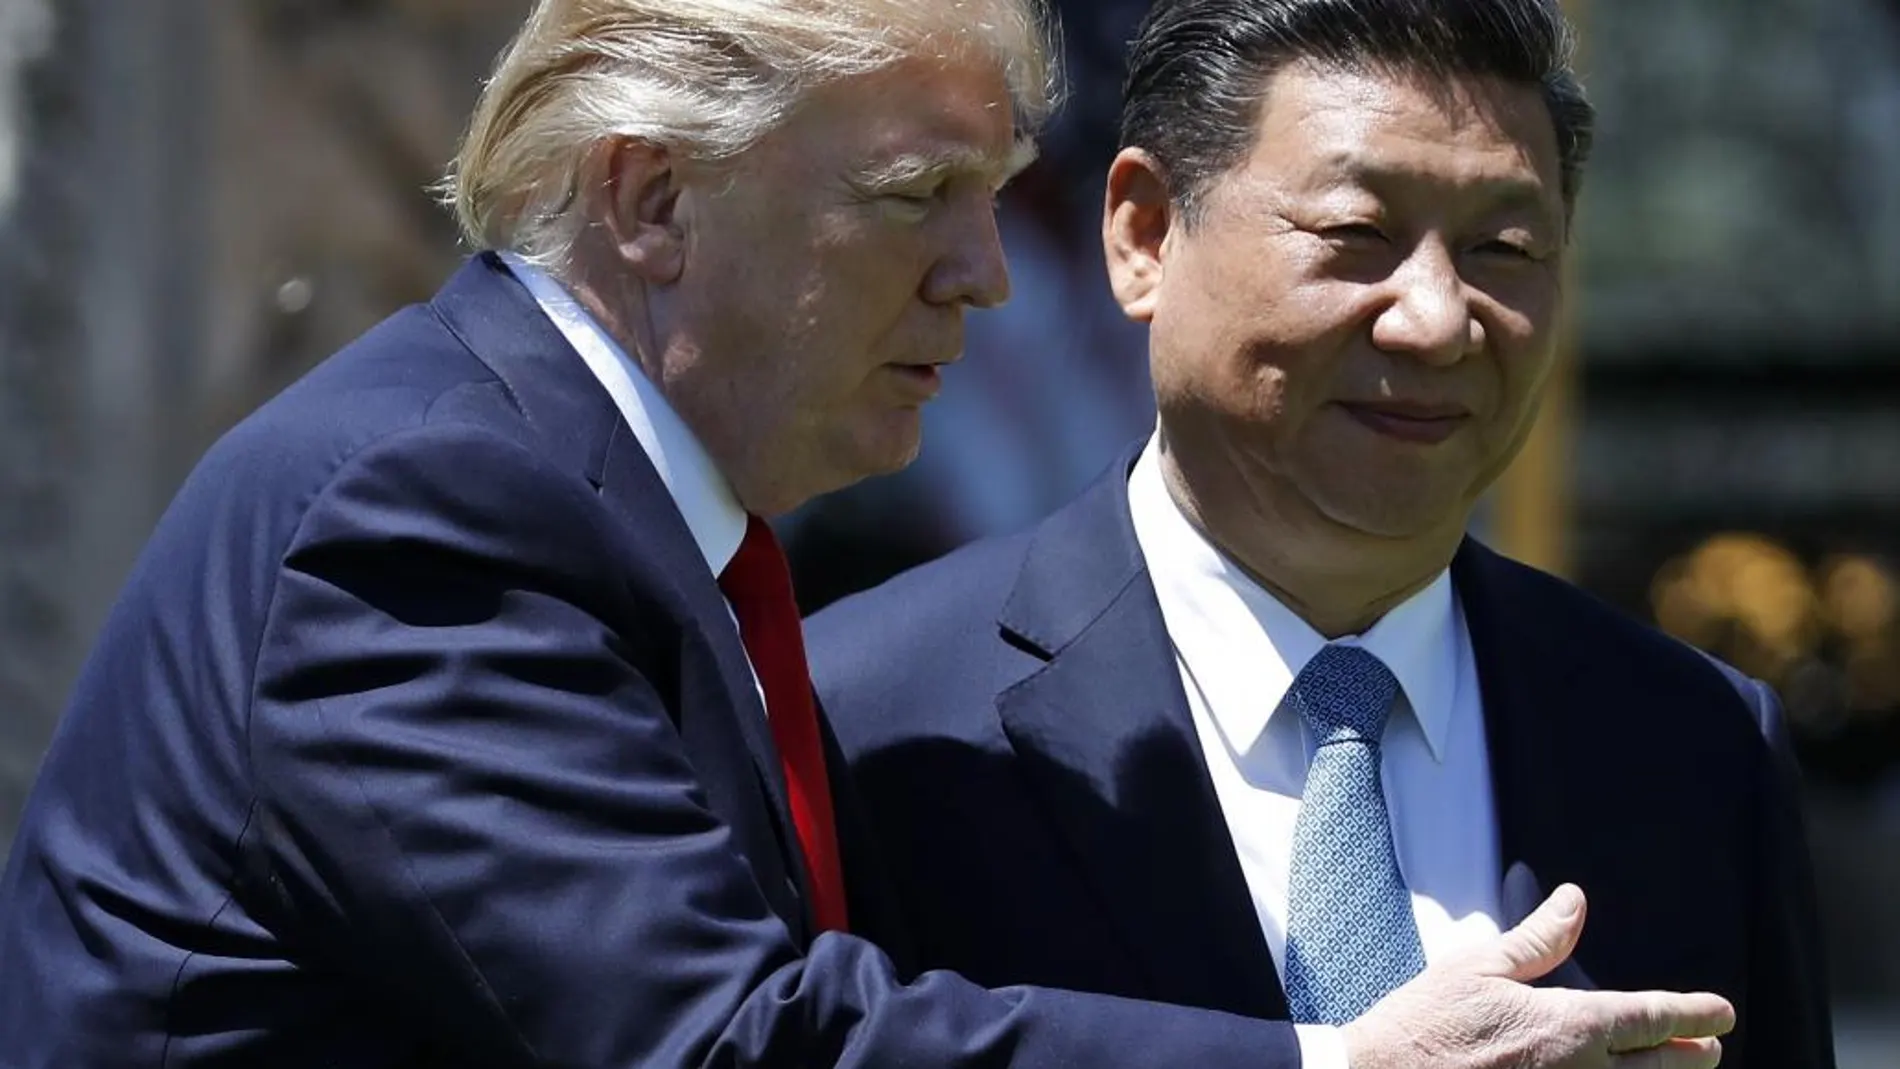 El presidente estadounidense, Donald Trump, junto a su homólogo chino, Xi Jinping el pasado 7 de abril durante su encuentro